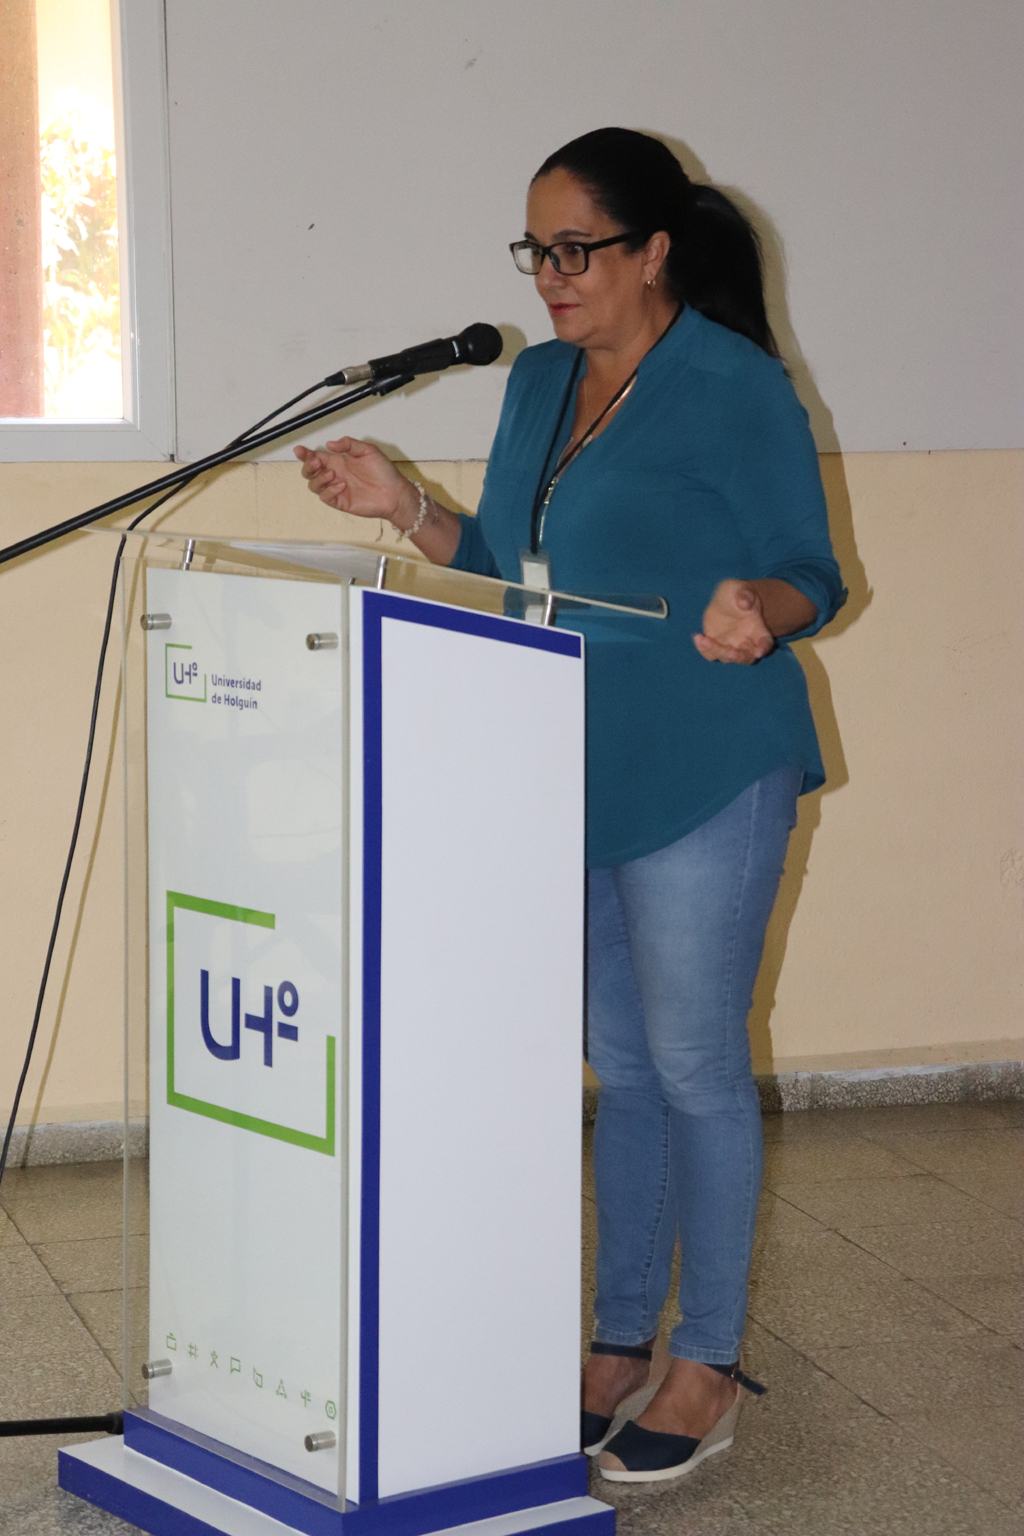 Sesiona Jornada Científica Estudiantil de la UHo, inaugurada por la Dra. C. Ana de Lourdes Torralbas, con una conferencia sobre el Emprededurismo y el Parque tecnológico que se abrirá próximamente en la institución. Desarrollado en la sede Celia Sánchez Manduley, el 20 de marzo de 2019-UHO/Foto: Yudith Rojas Tamayo